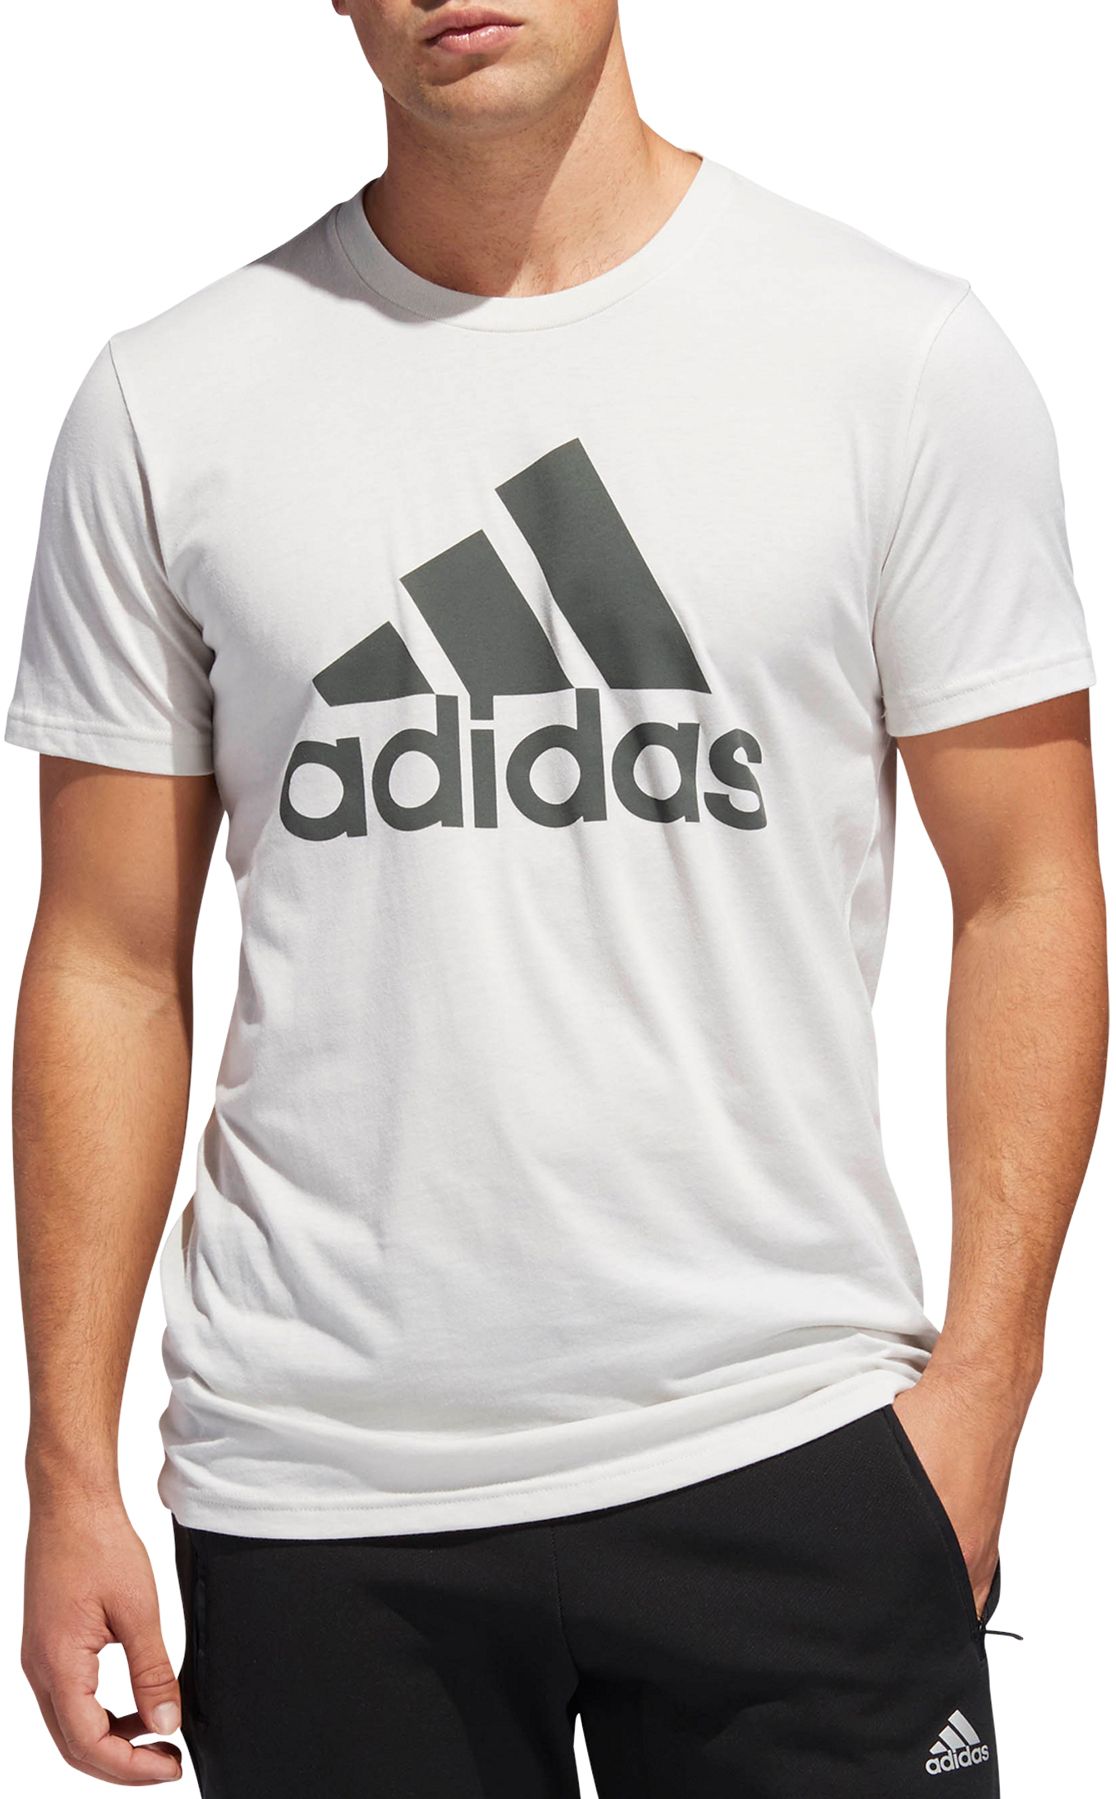 adidas Men's Badge Of Sport Classic T-Shirt - Walmart.com